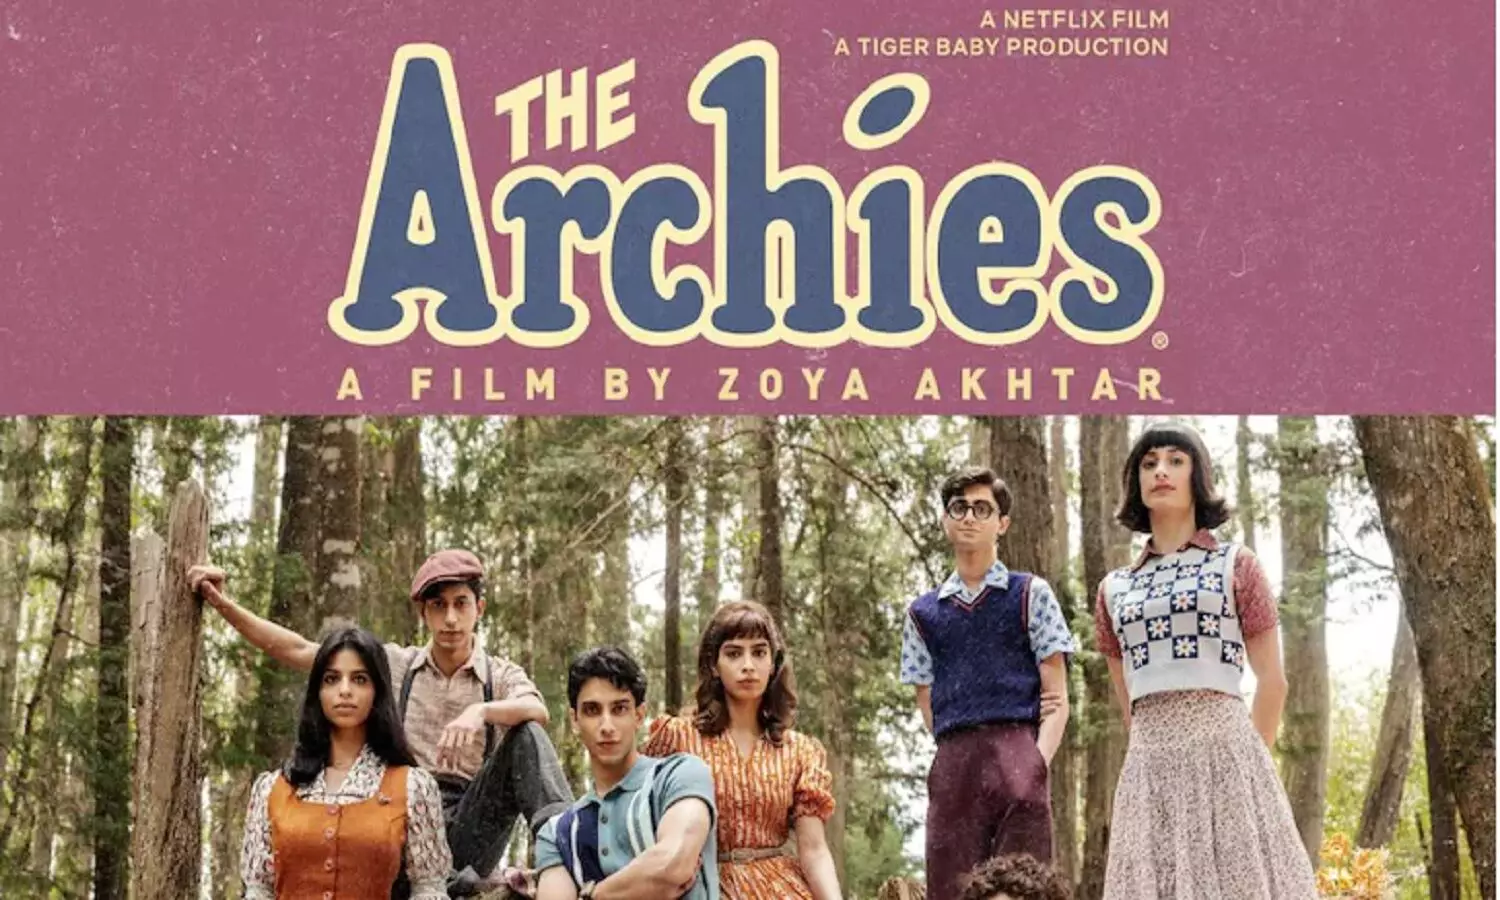 The Archies Release Date: सुहाना खान, ख़ुशी कपूर जैसे स्टार किड्स से भरी हुई फिल्म द आर्चिस आने वाली है